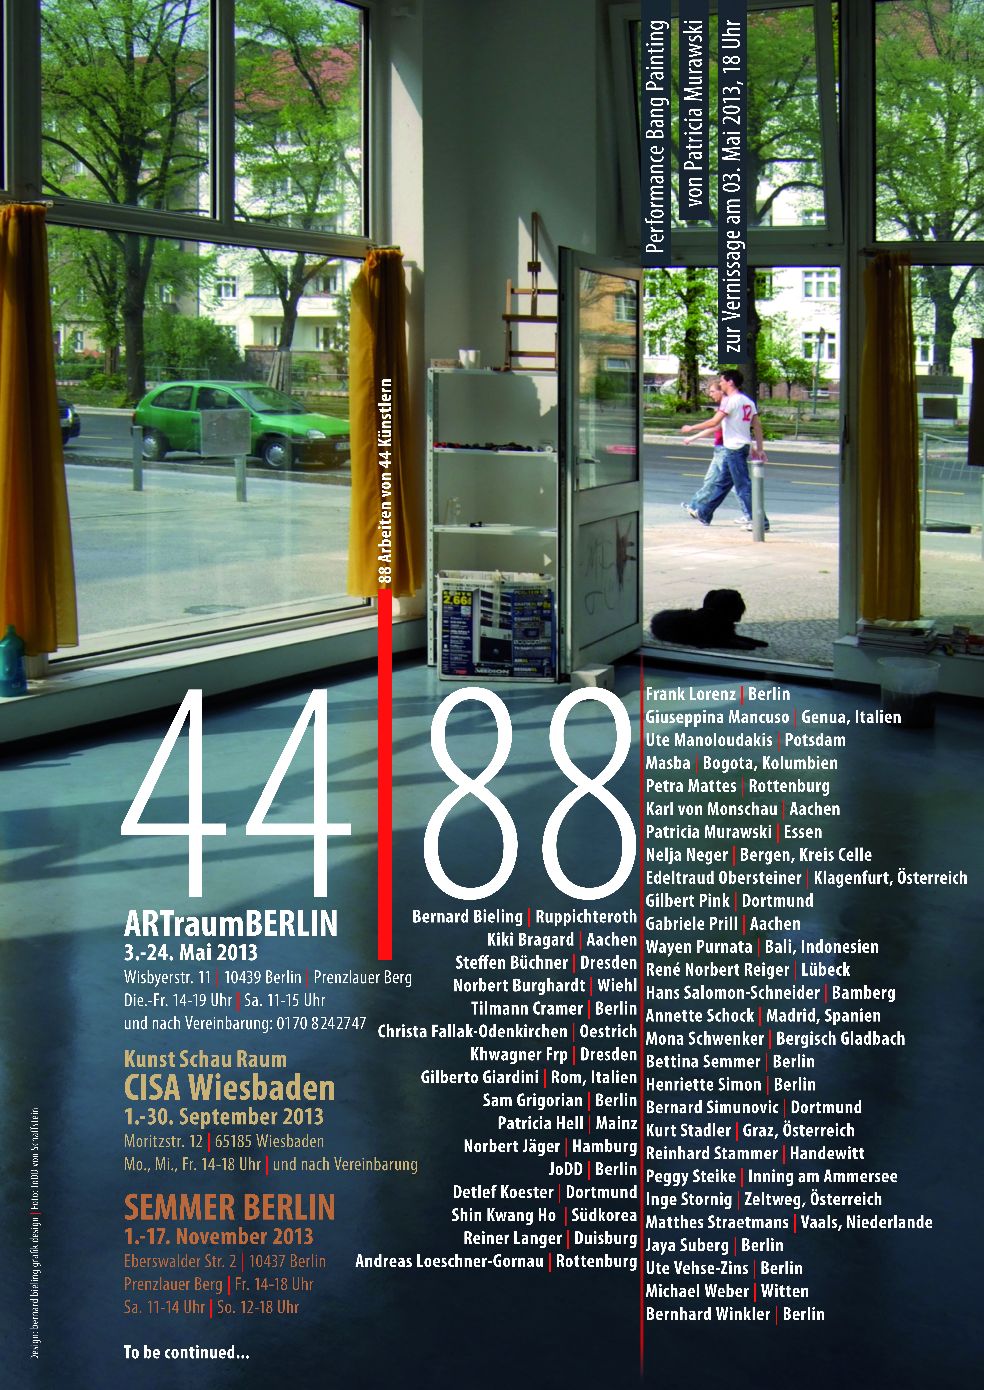 ARTraumBERLIN : Austellung44-88

3.-24.Mai 2013

88 Bilder  von 44 Internationalen Künstlern im Format 30x24cm